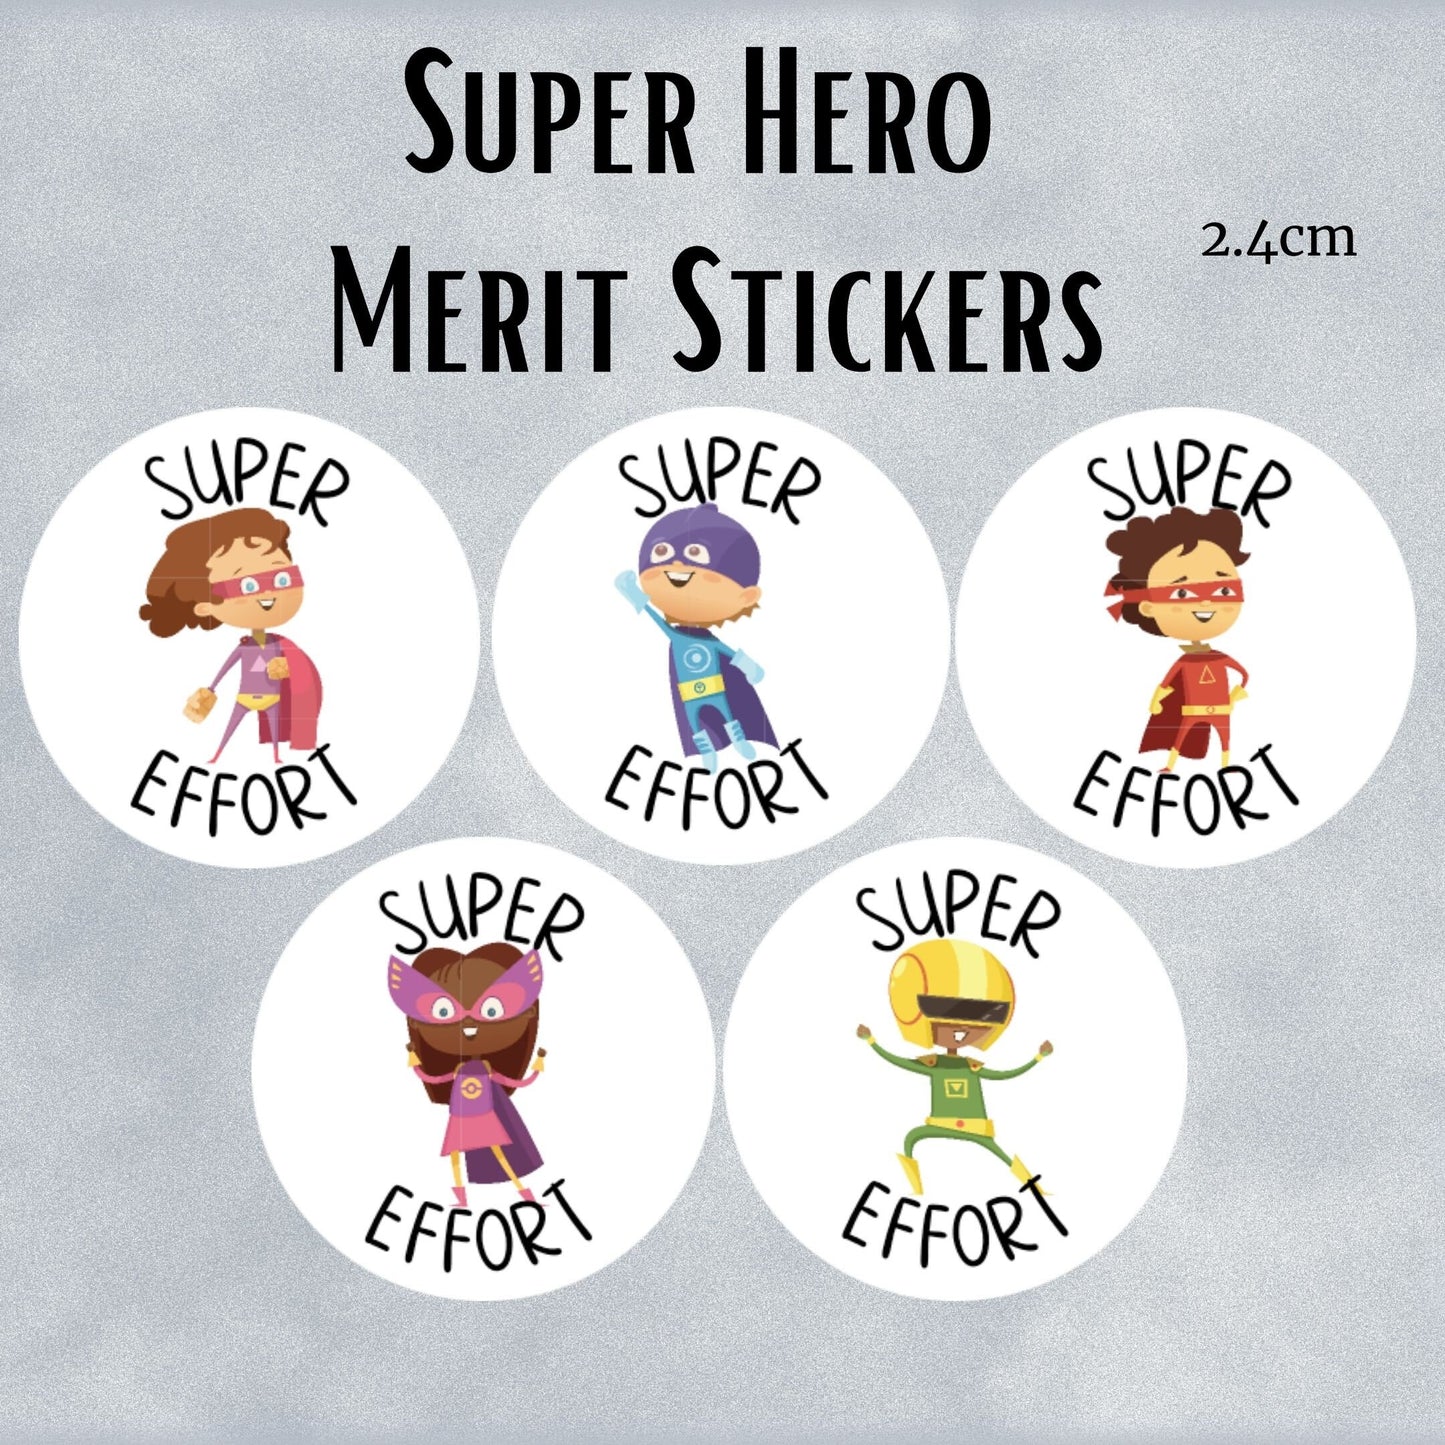 Super Heroes General Merit Stickers